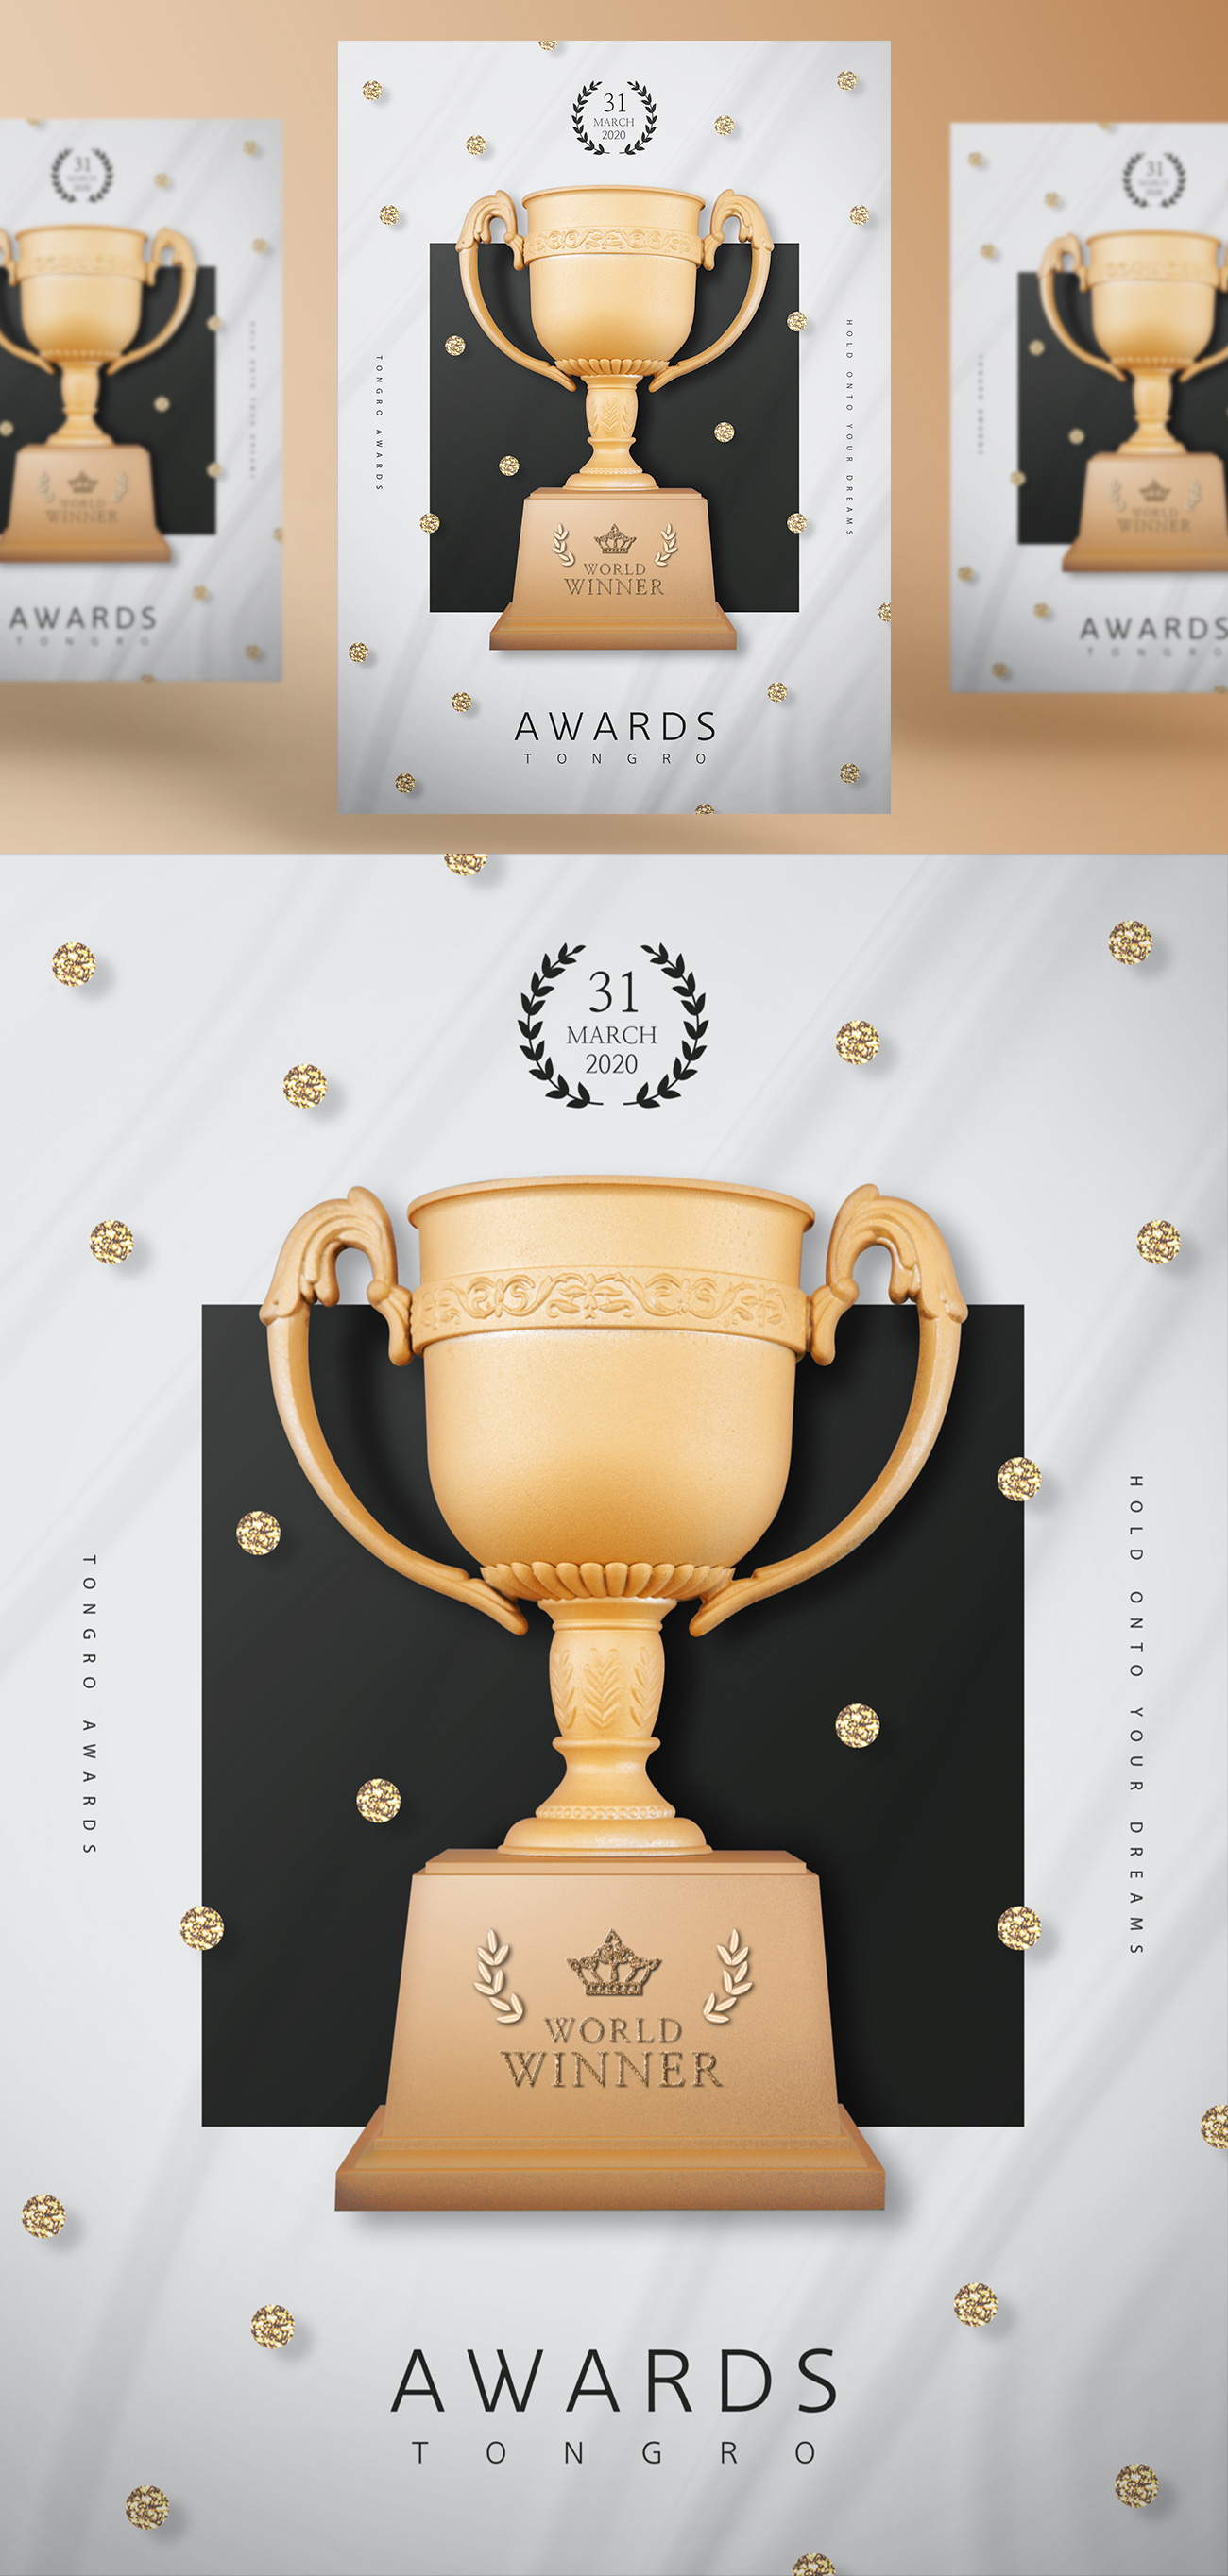 2019年最新颁奖盛典金色奖杯奖牌PSD海报模版素材 Wor